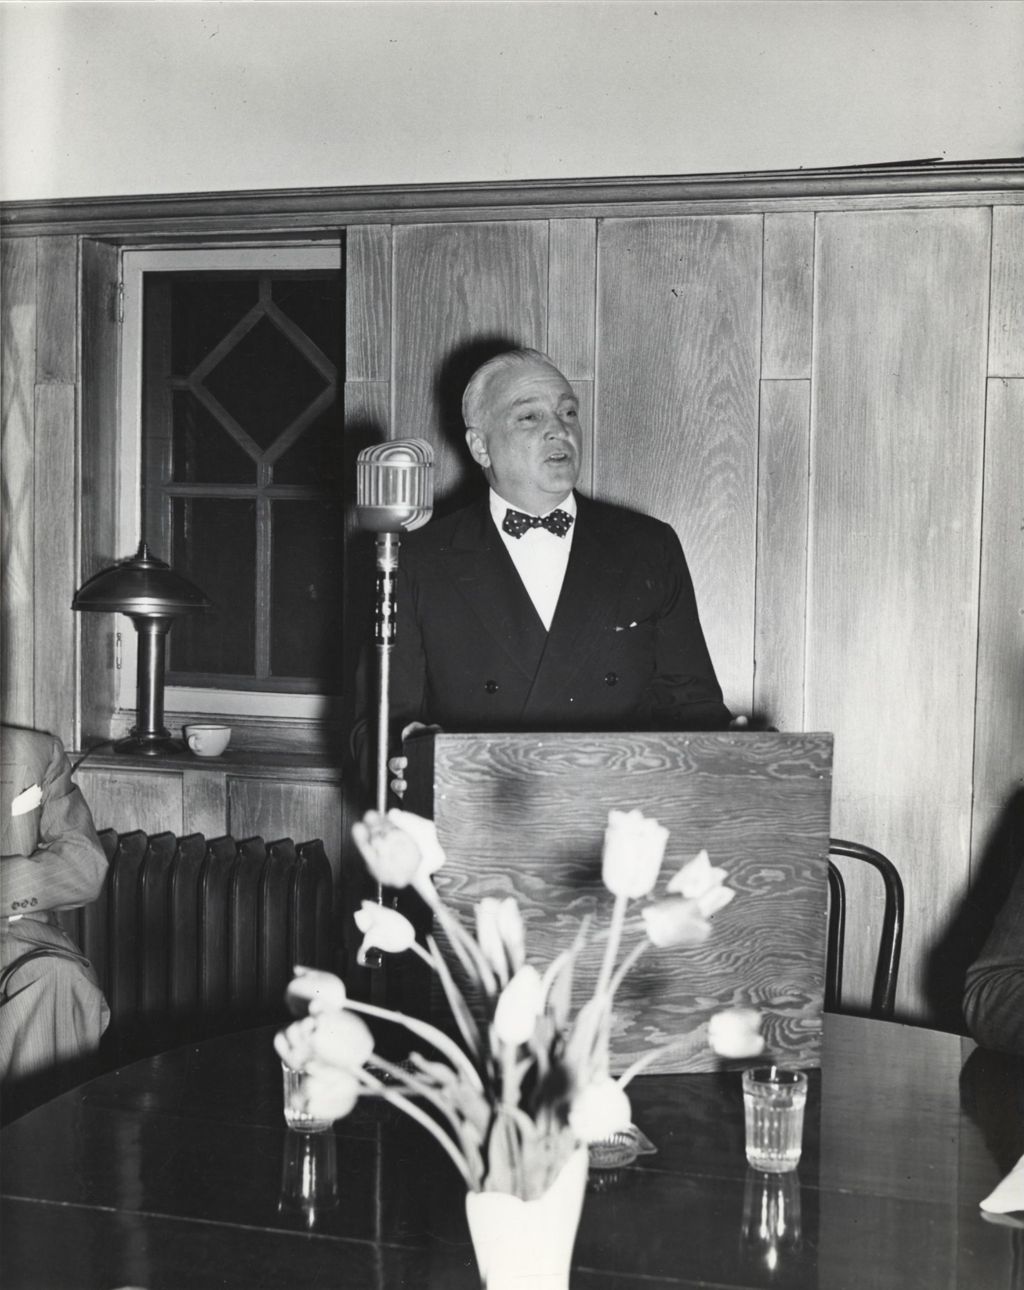 Miniature of Marshall Field III speaks at the 1949 Hull-House Associates Dinner